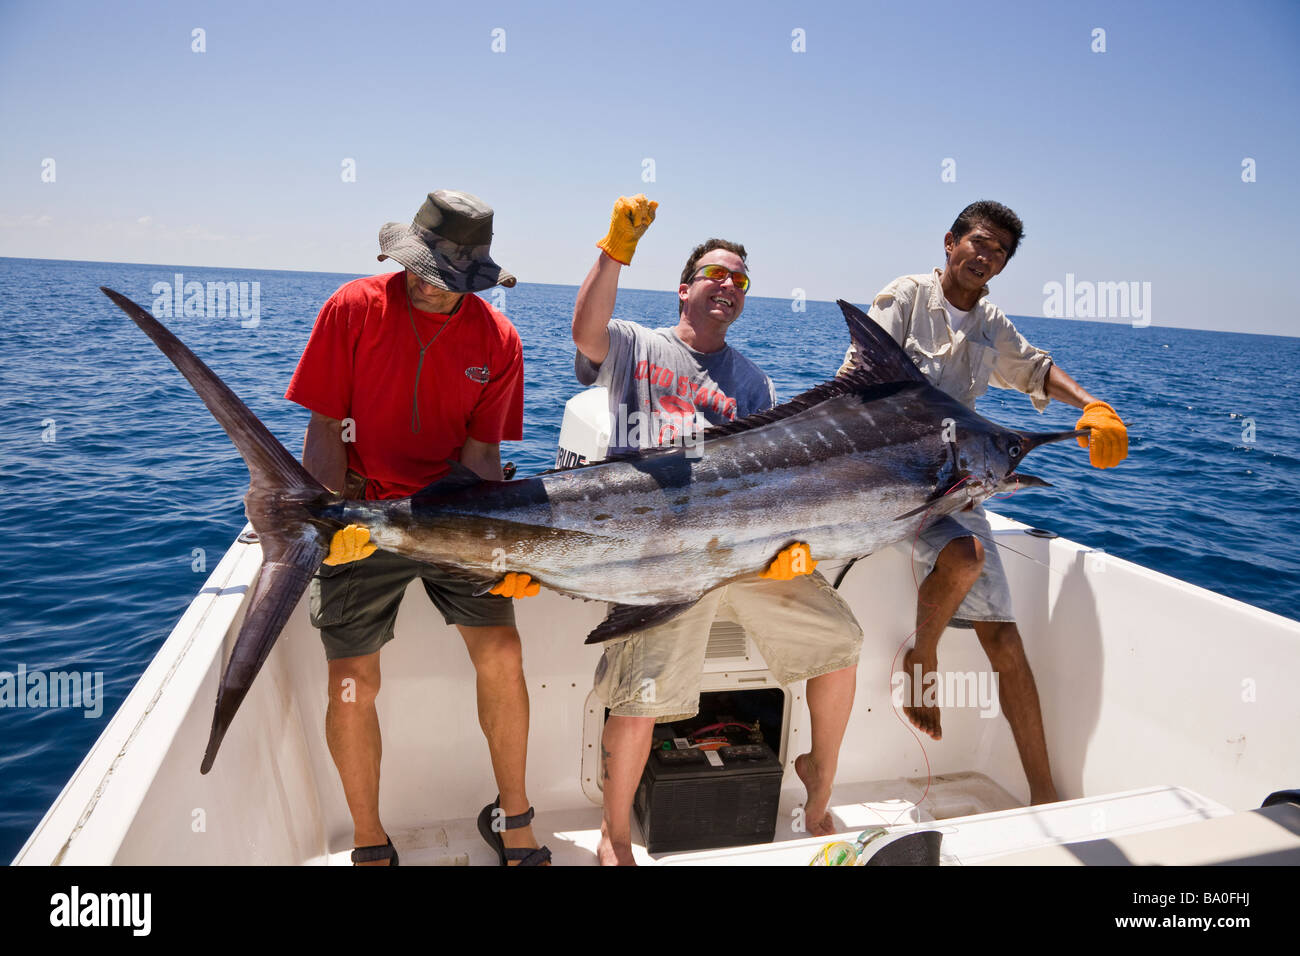 La pêche sportive dans la baie Drake, Costa Rica. Prise du jour marlin bleu (Makaira nigricans). Banque D'Images